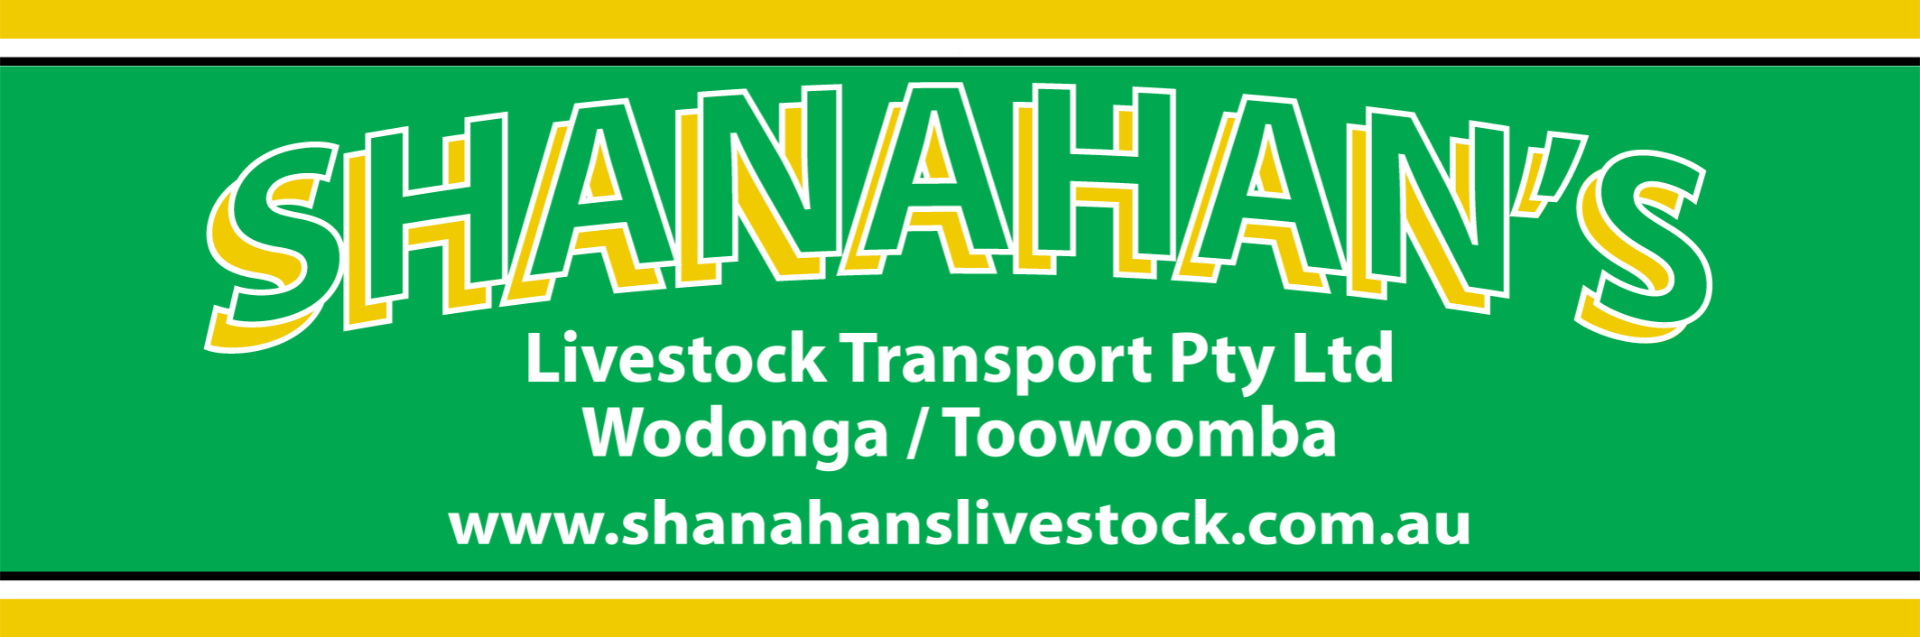 Shanahan's Livestock Transport